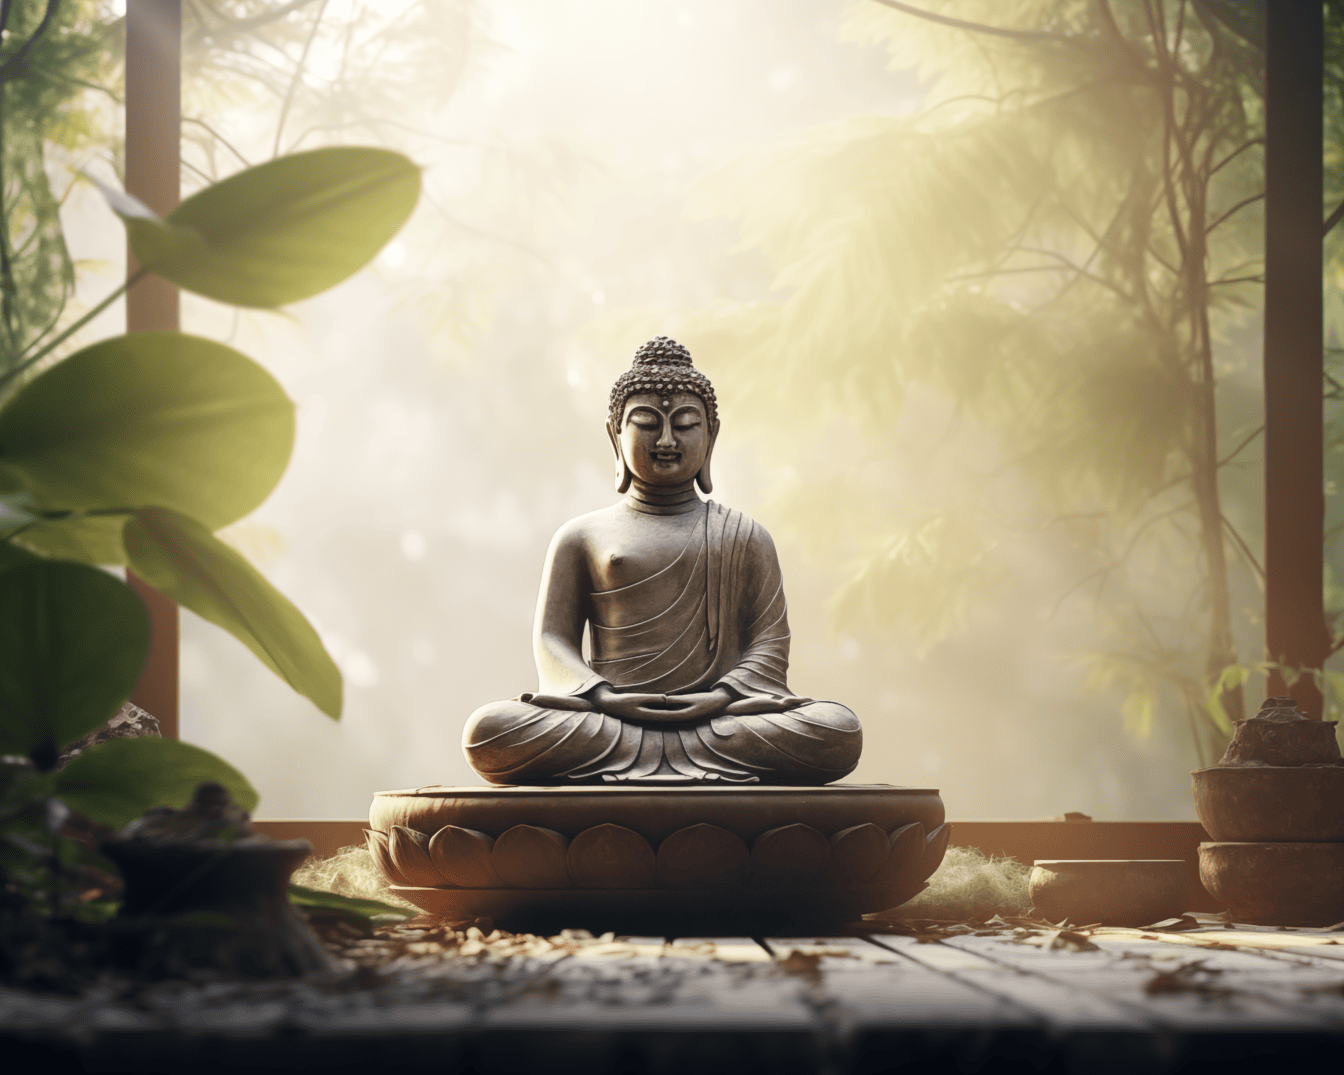 Statue av Buddha som sitter i lotusstilling og praktiserer zen-meditasjon på verandaen med myke solstråler i bakgrunnen